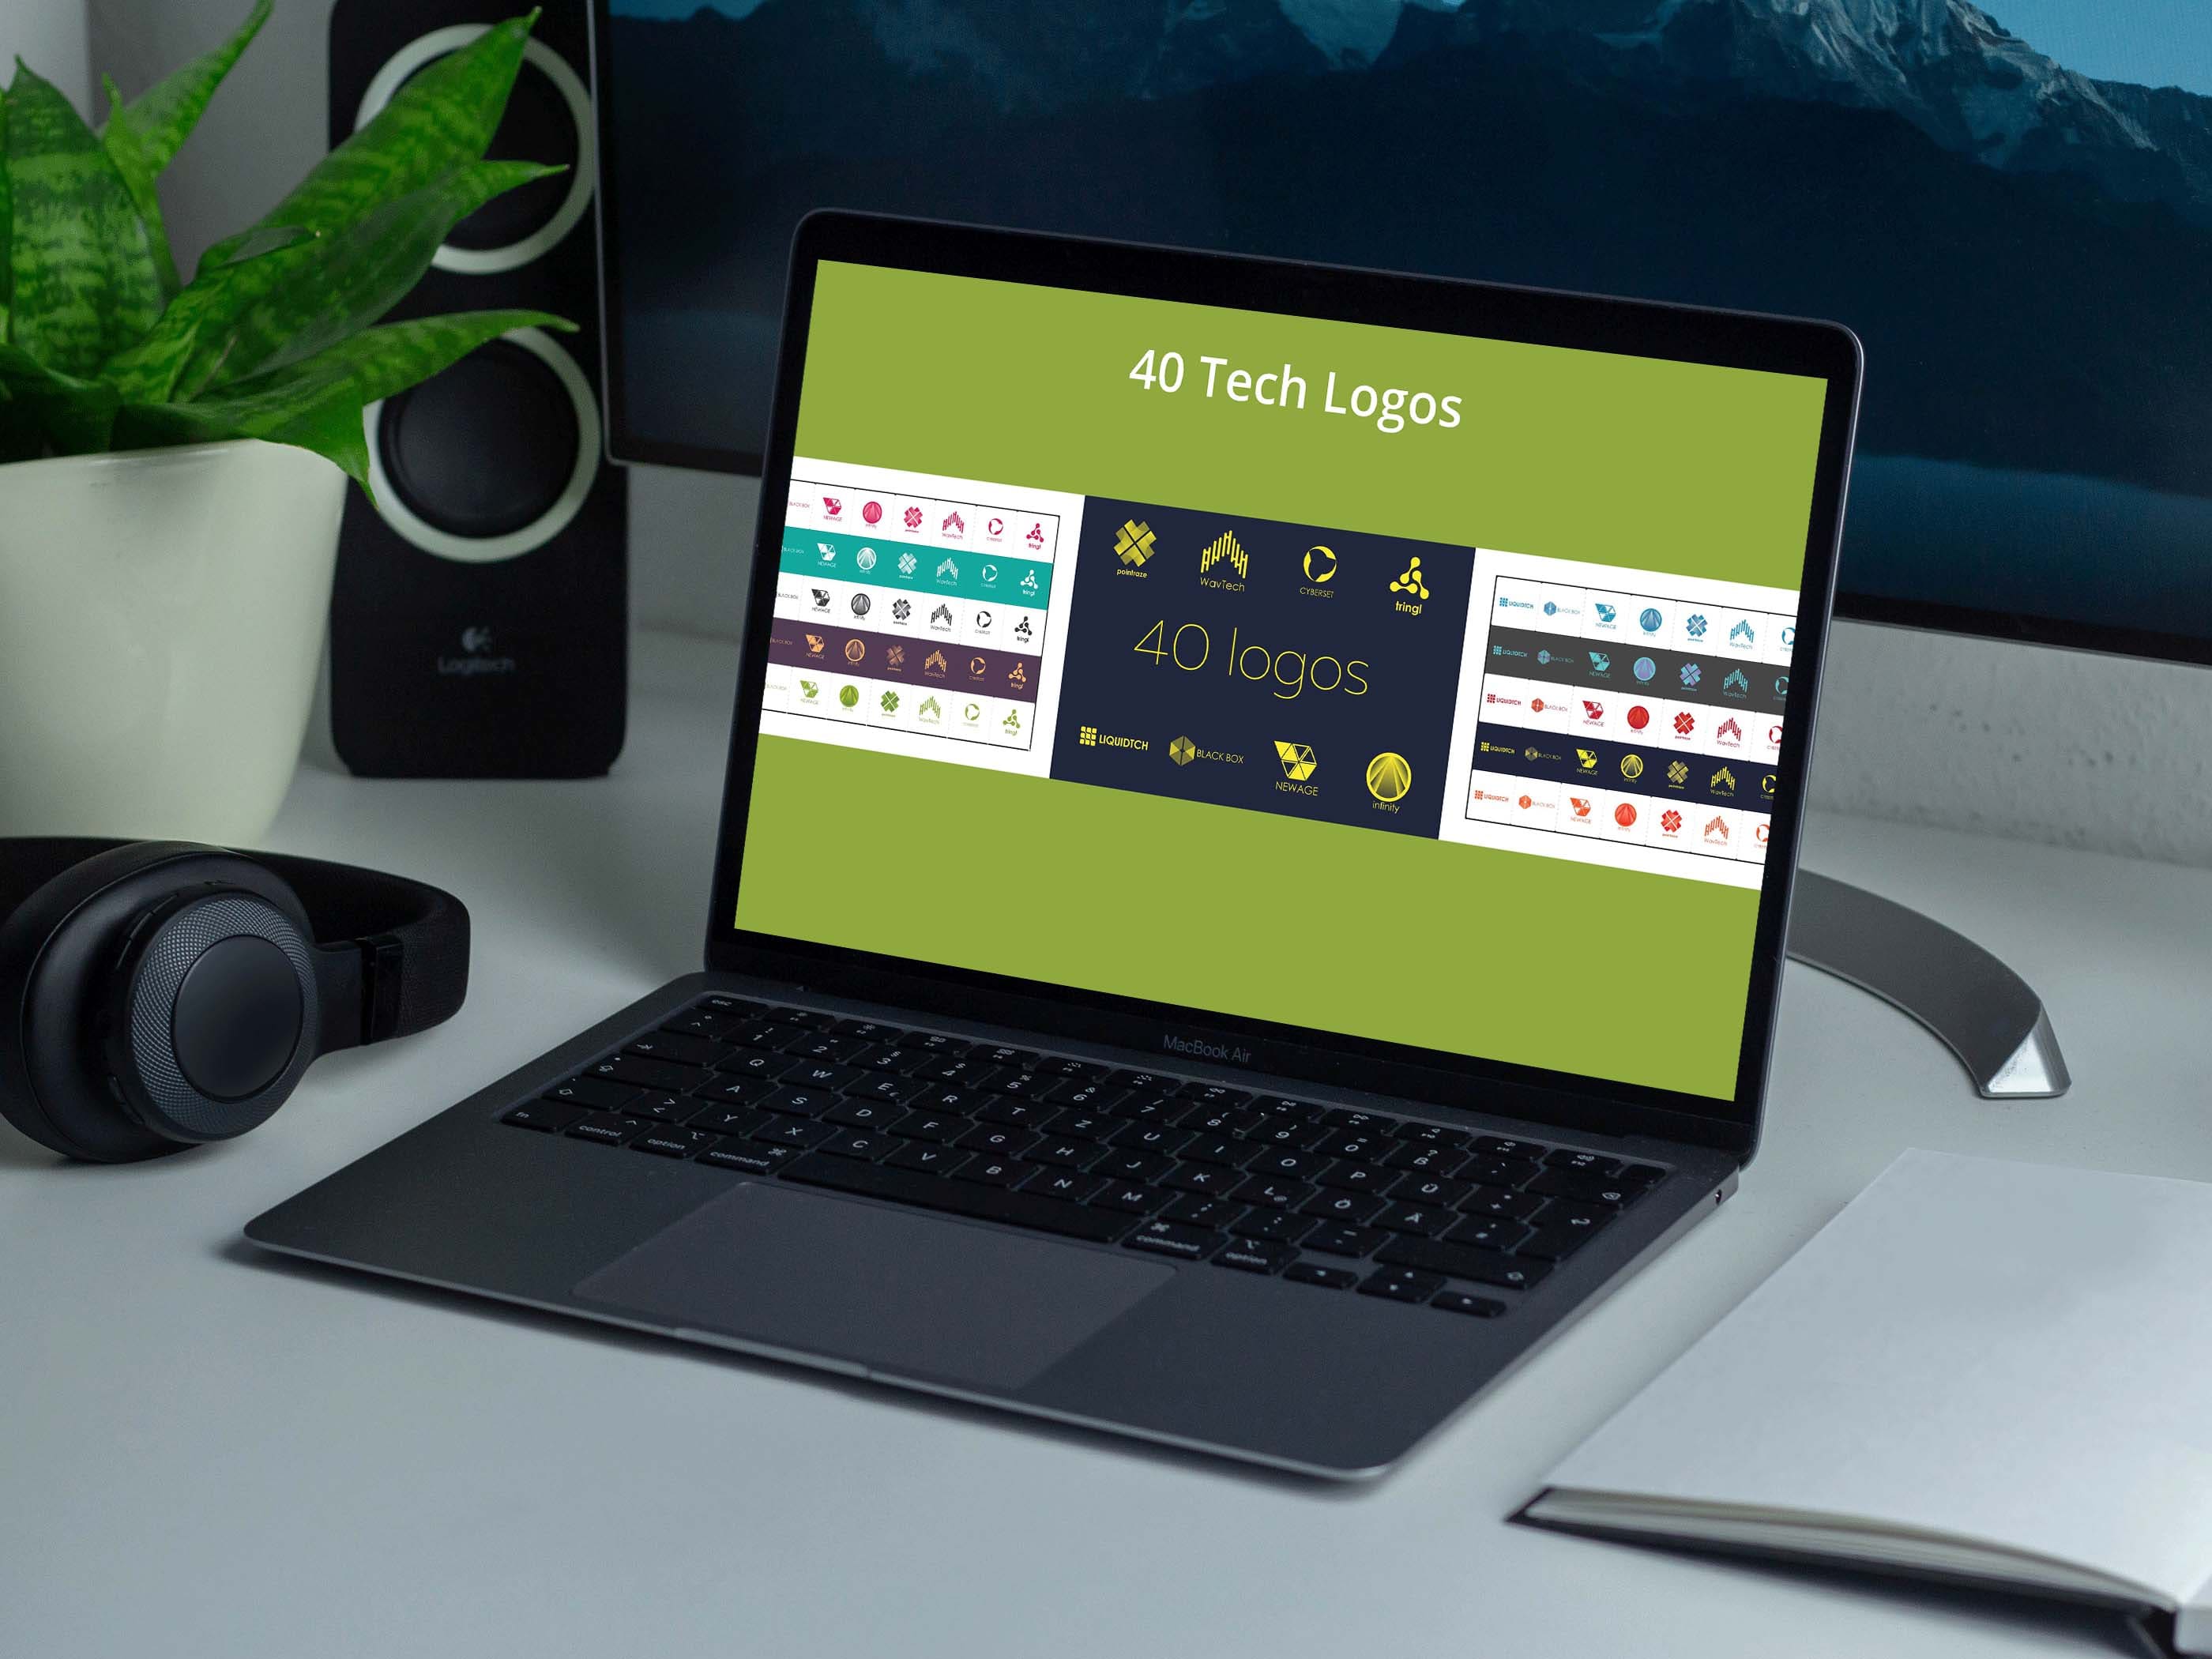 40 Tech Logos laptop preview.